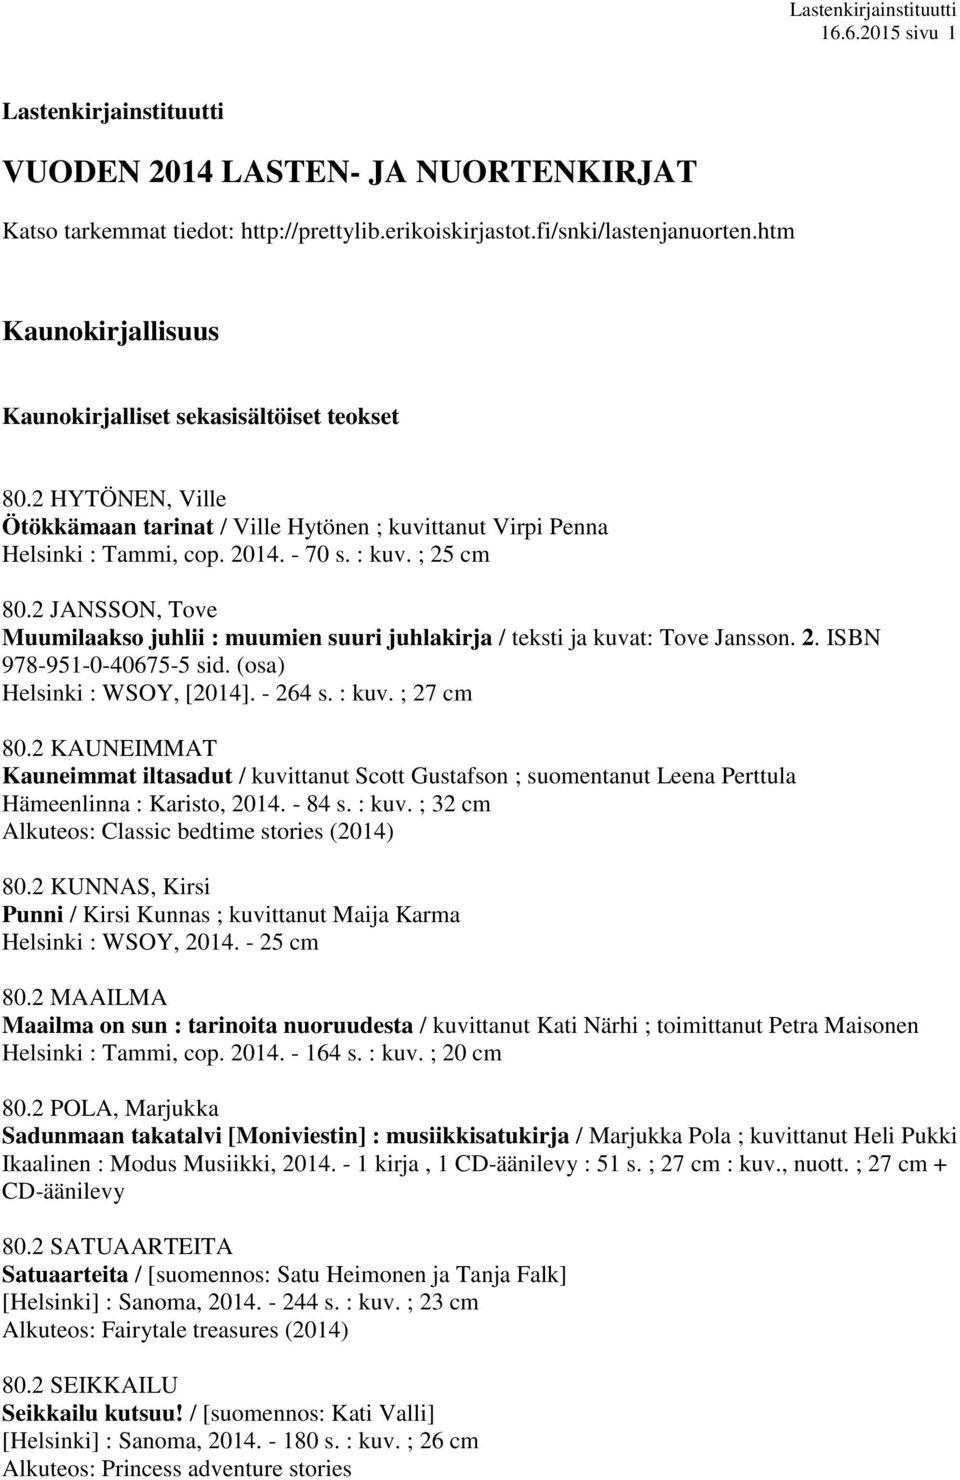 2 JANSSON, Tove Muumilaakso juhlii : muumien suuri juhlakirja / teksti ja kuvat: Tove Jansson. 2. ISBN 978-951-0-40675-5 sid. (osa) Helsinki : WSOY, [2014]. - 264 s. : kuv. ; 27 cm 80.